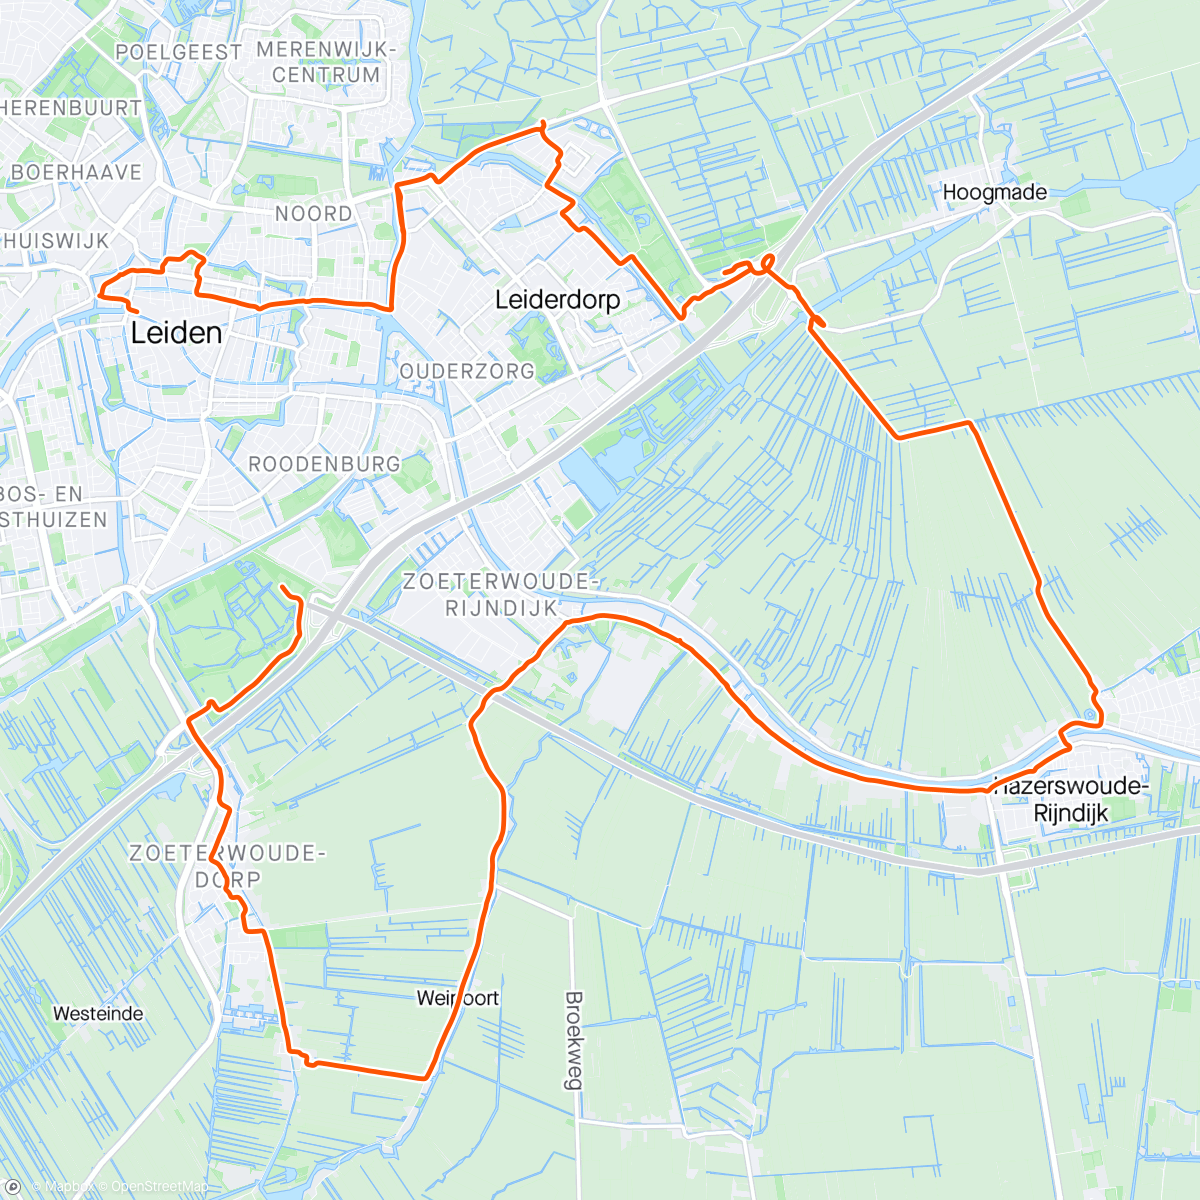 Map of the activity, Supporten bij de marathon